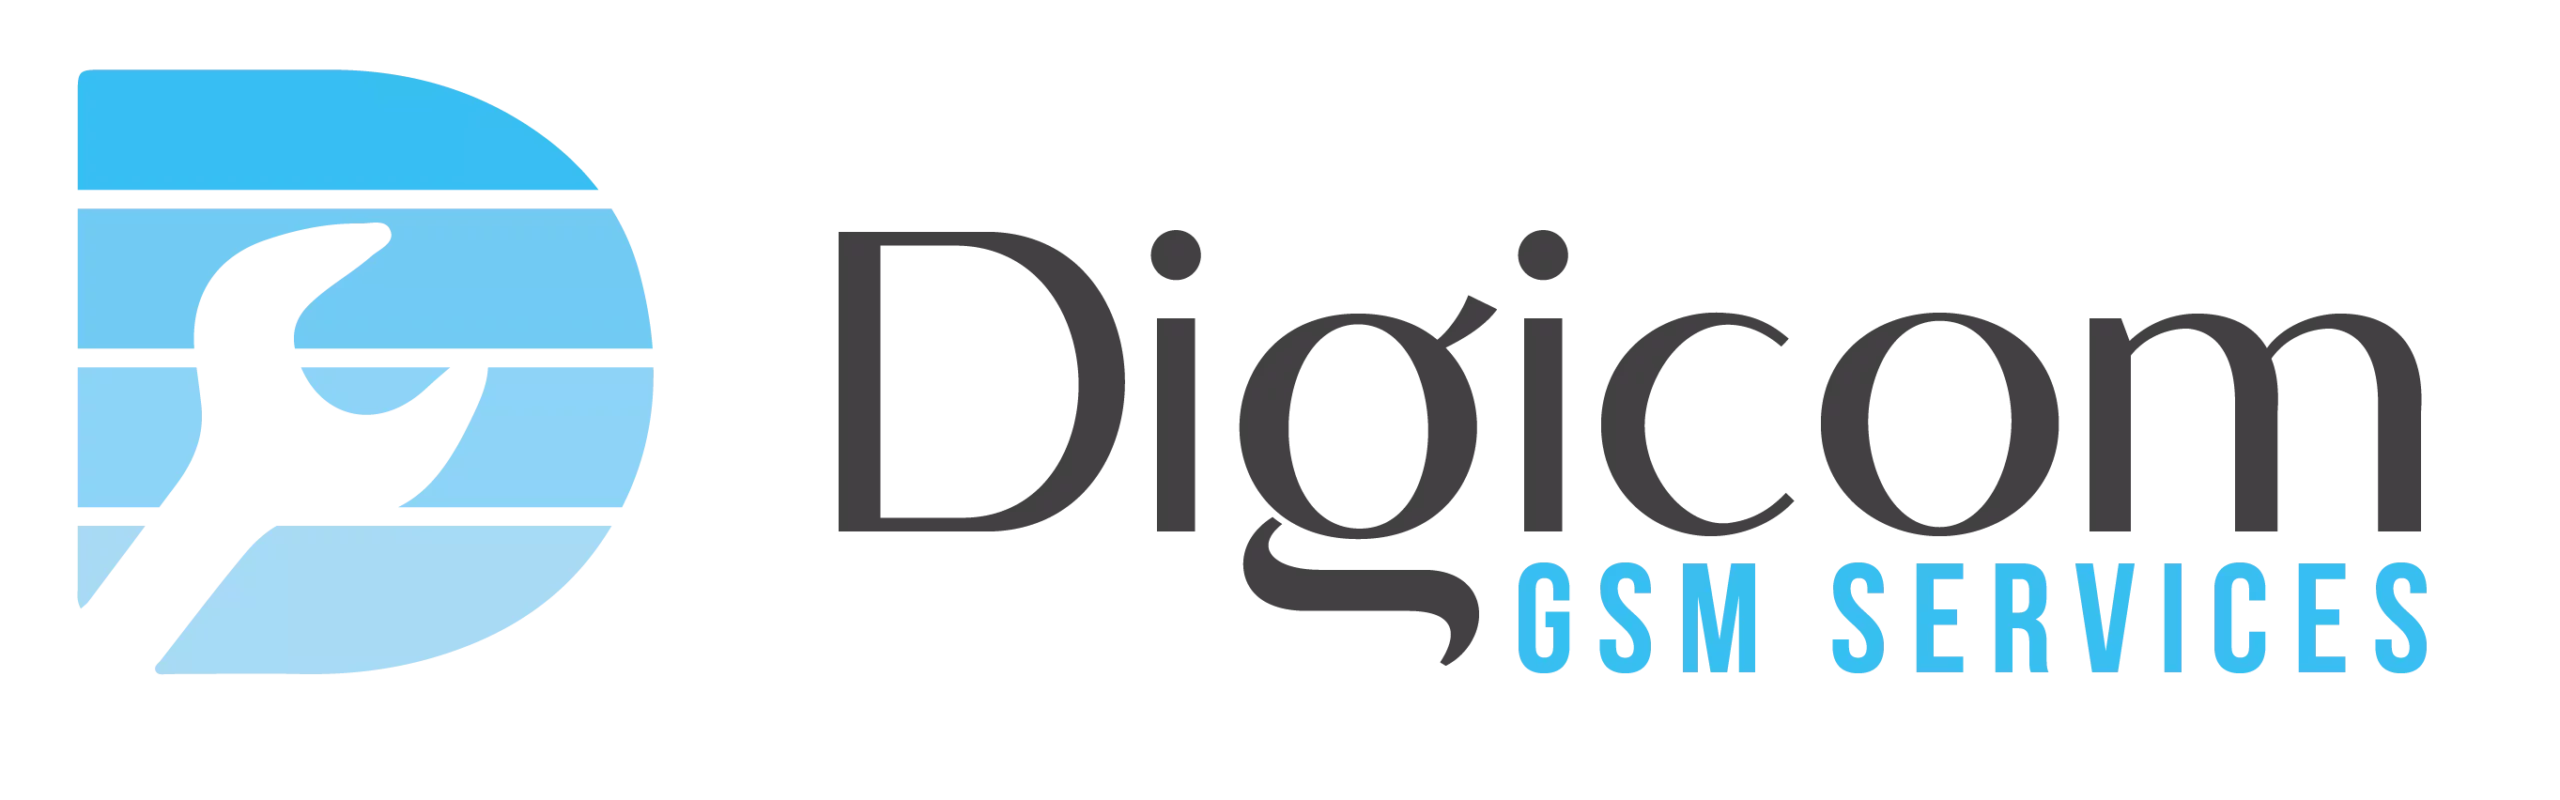 Digicom Gsm Services